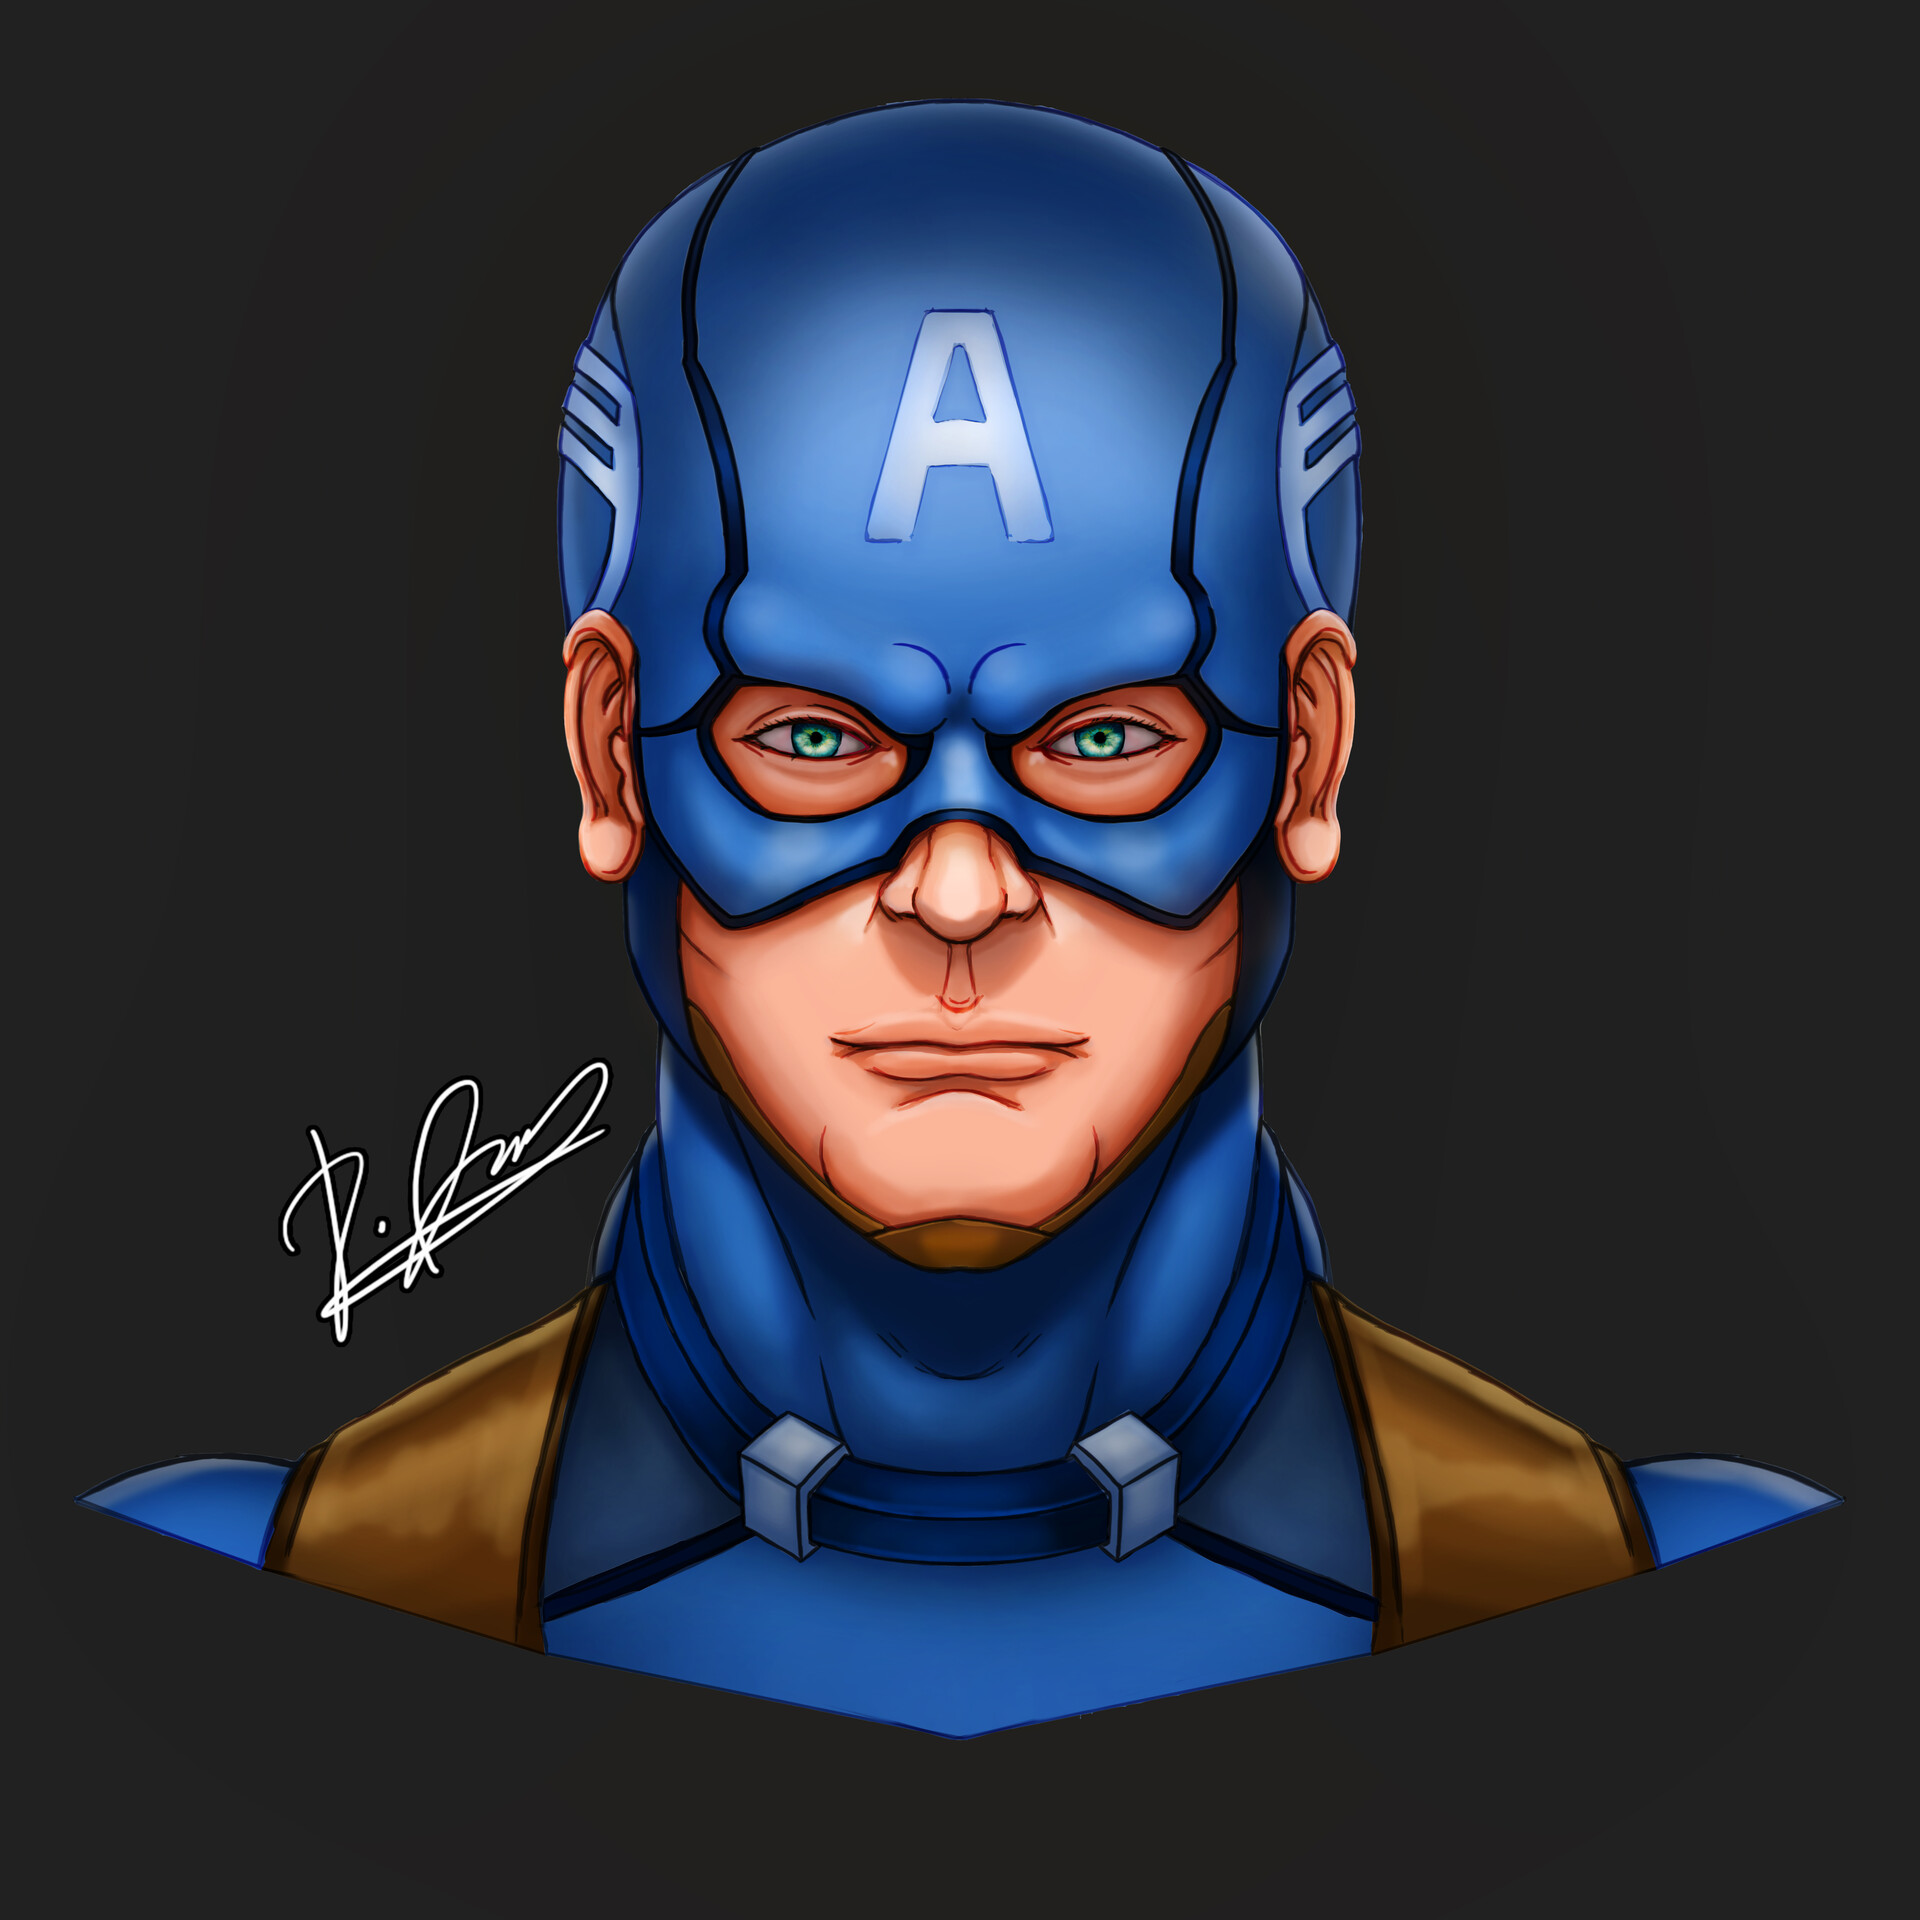 Chris Evans Portrait as Captain America by Julio Lucas :: Behance